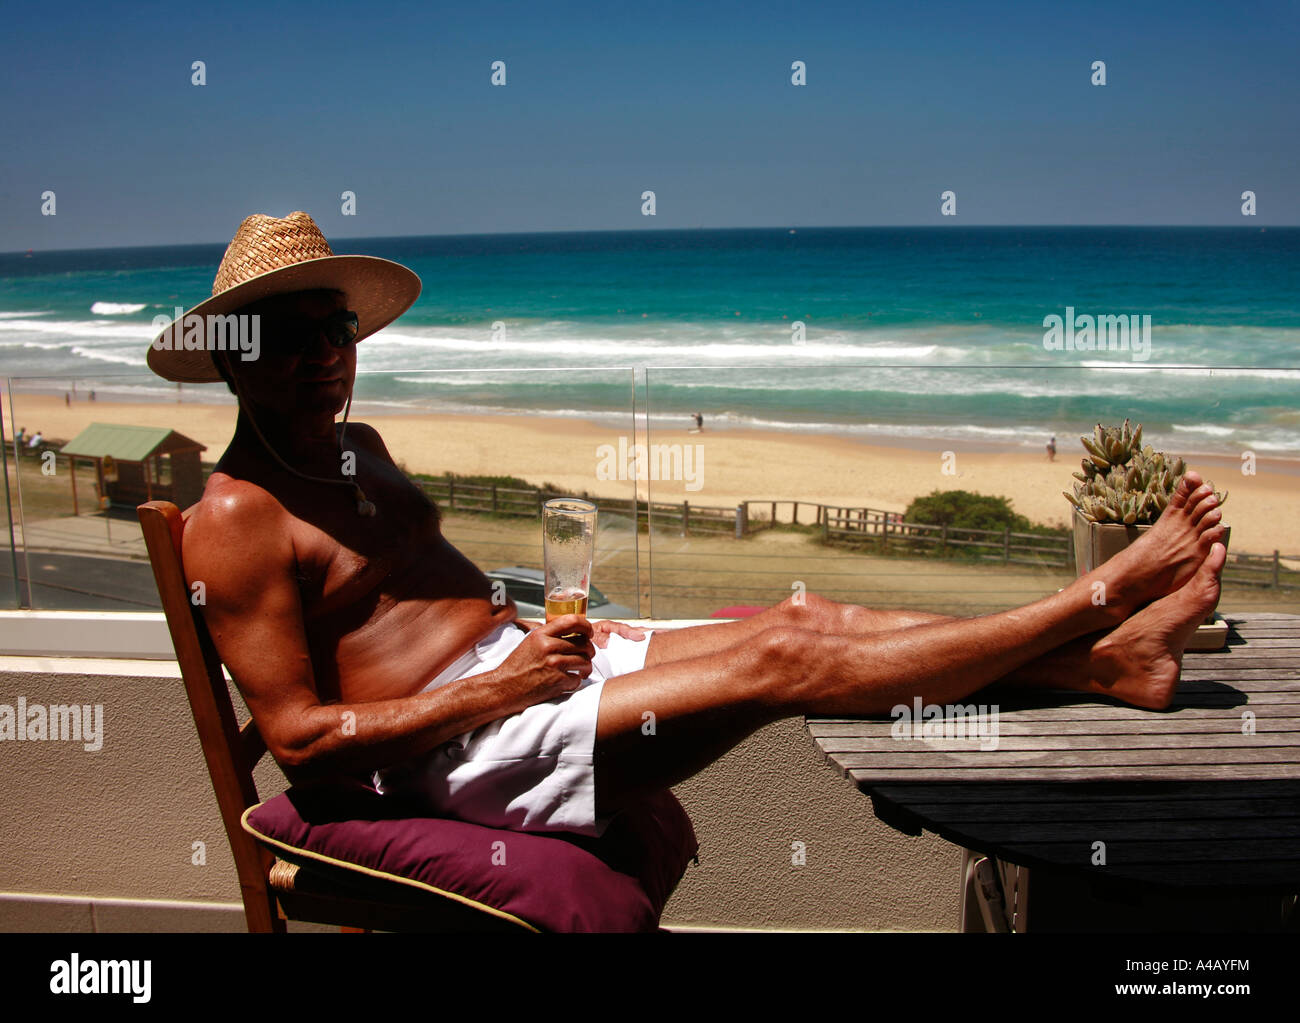 A mettre en place et bien tannés mais middle aged homme boit une bière au soleil avec une vue sur la plage de Curl Curl et surf Sydney Australie Banque D'Images